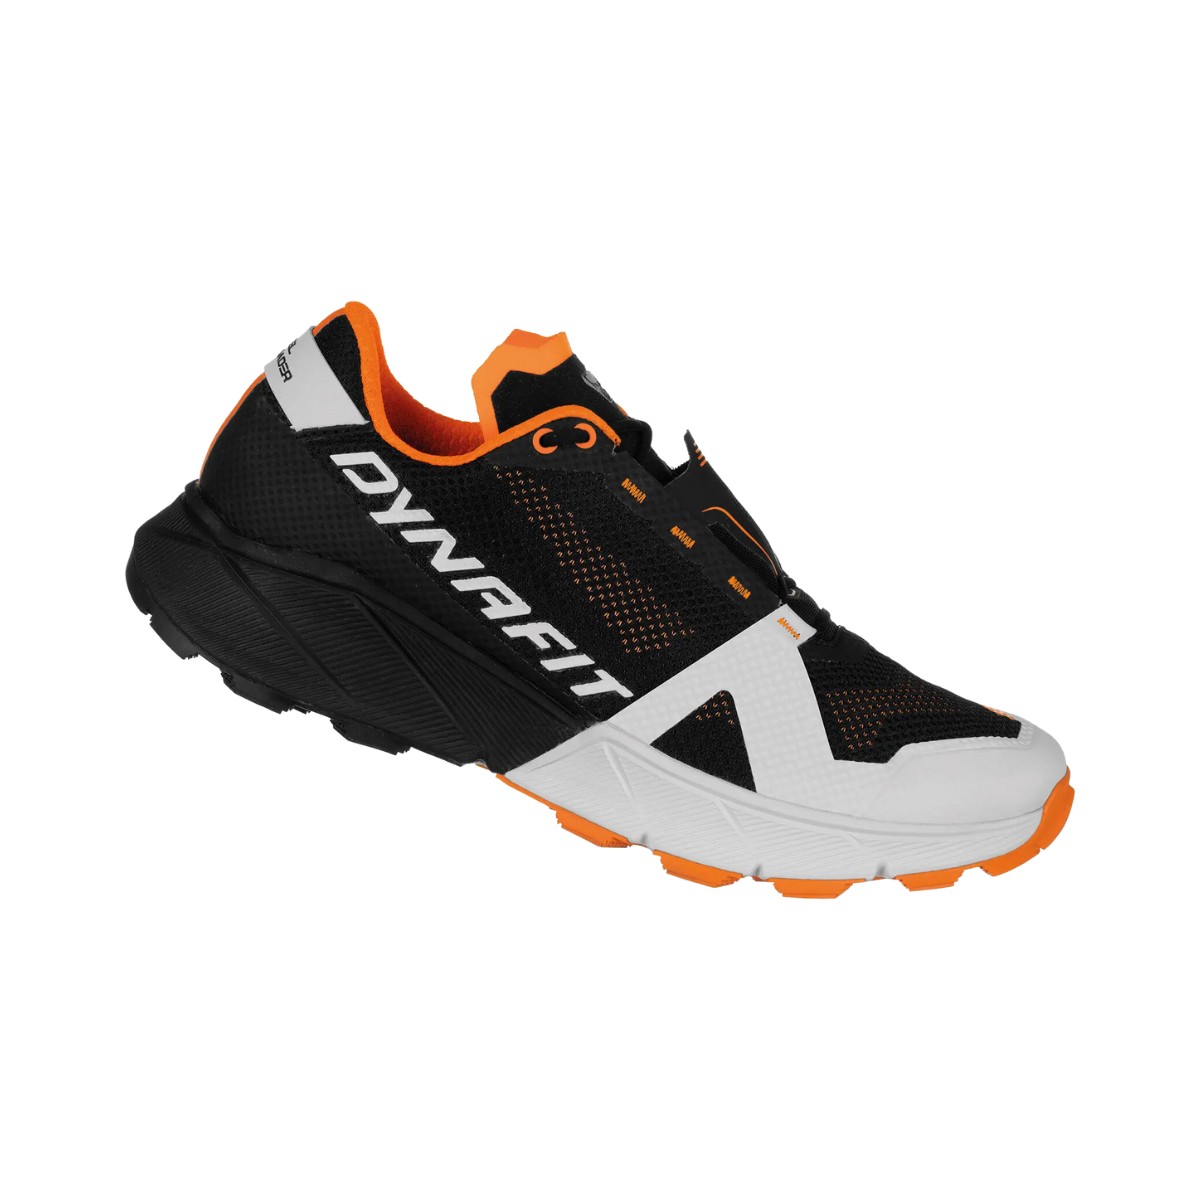 Schuhe Dynafit Ultra 100 Schwarz Weiß Orange, Größe 42 - EUR